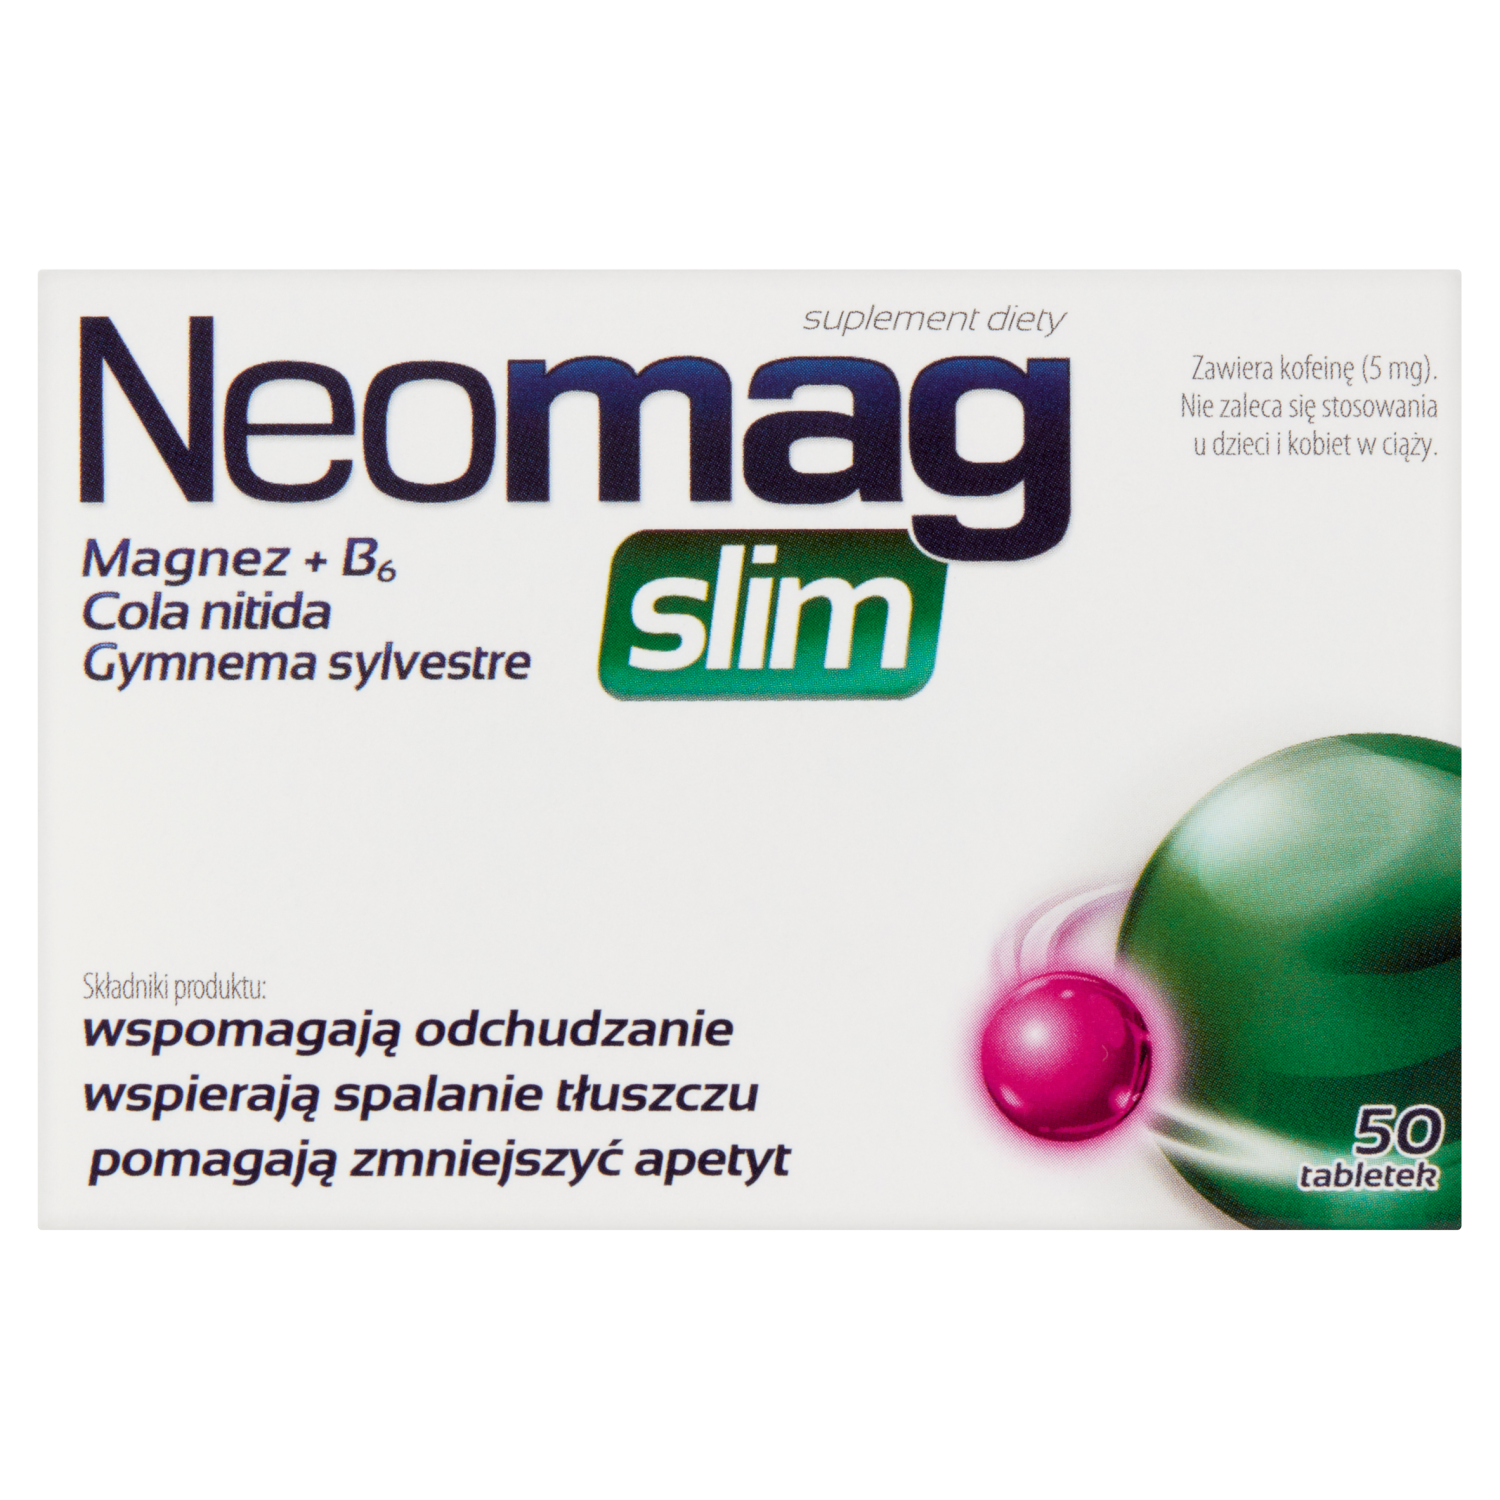 sesja биологически активная добавка 50 таблеток 1 упаковка Neomag Slim биологически активная добавка, 50 таблеток/1 упаковка